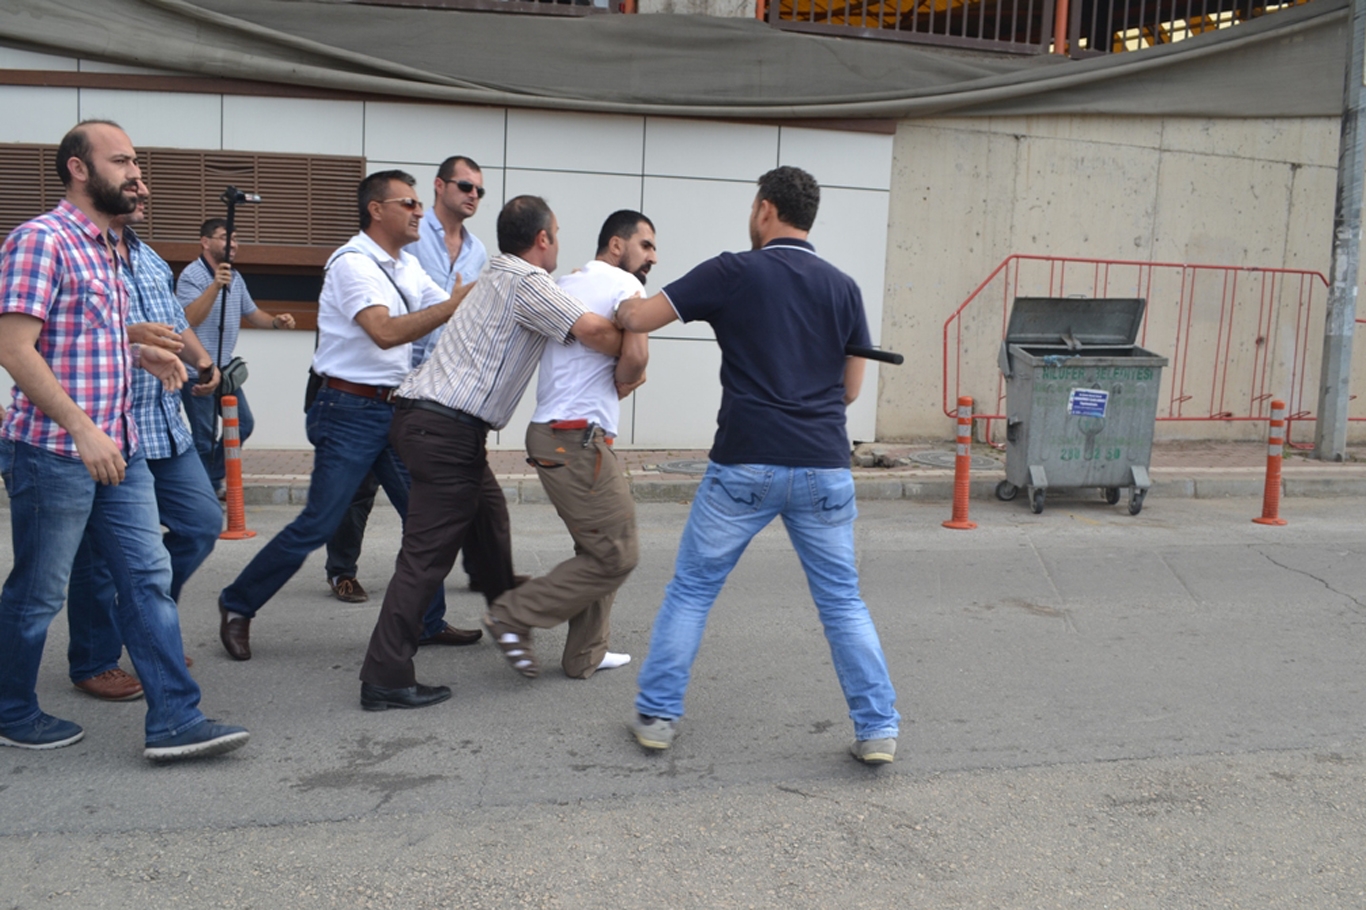 Bursa’da LGBTİ grubun eylemine halk müdahalesi